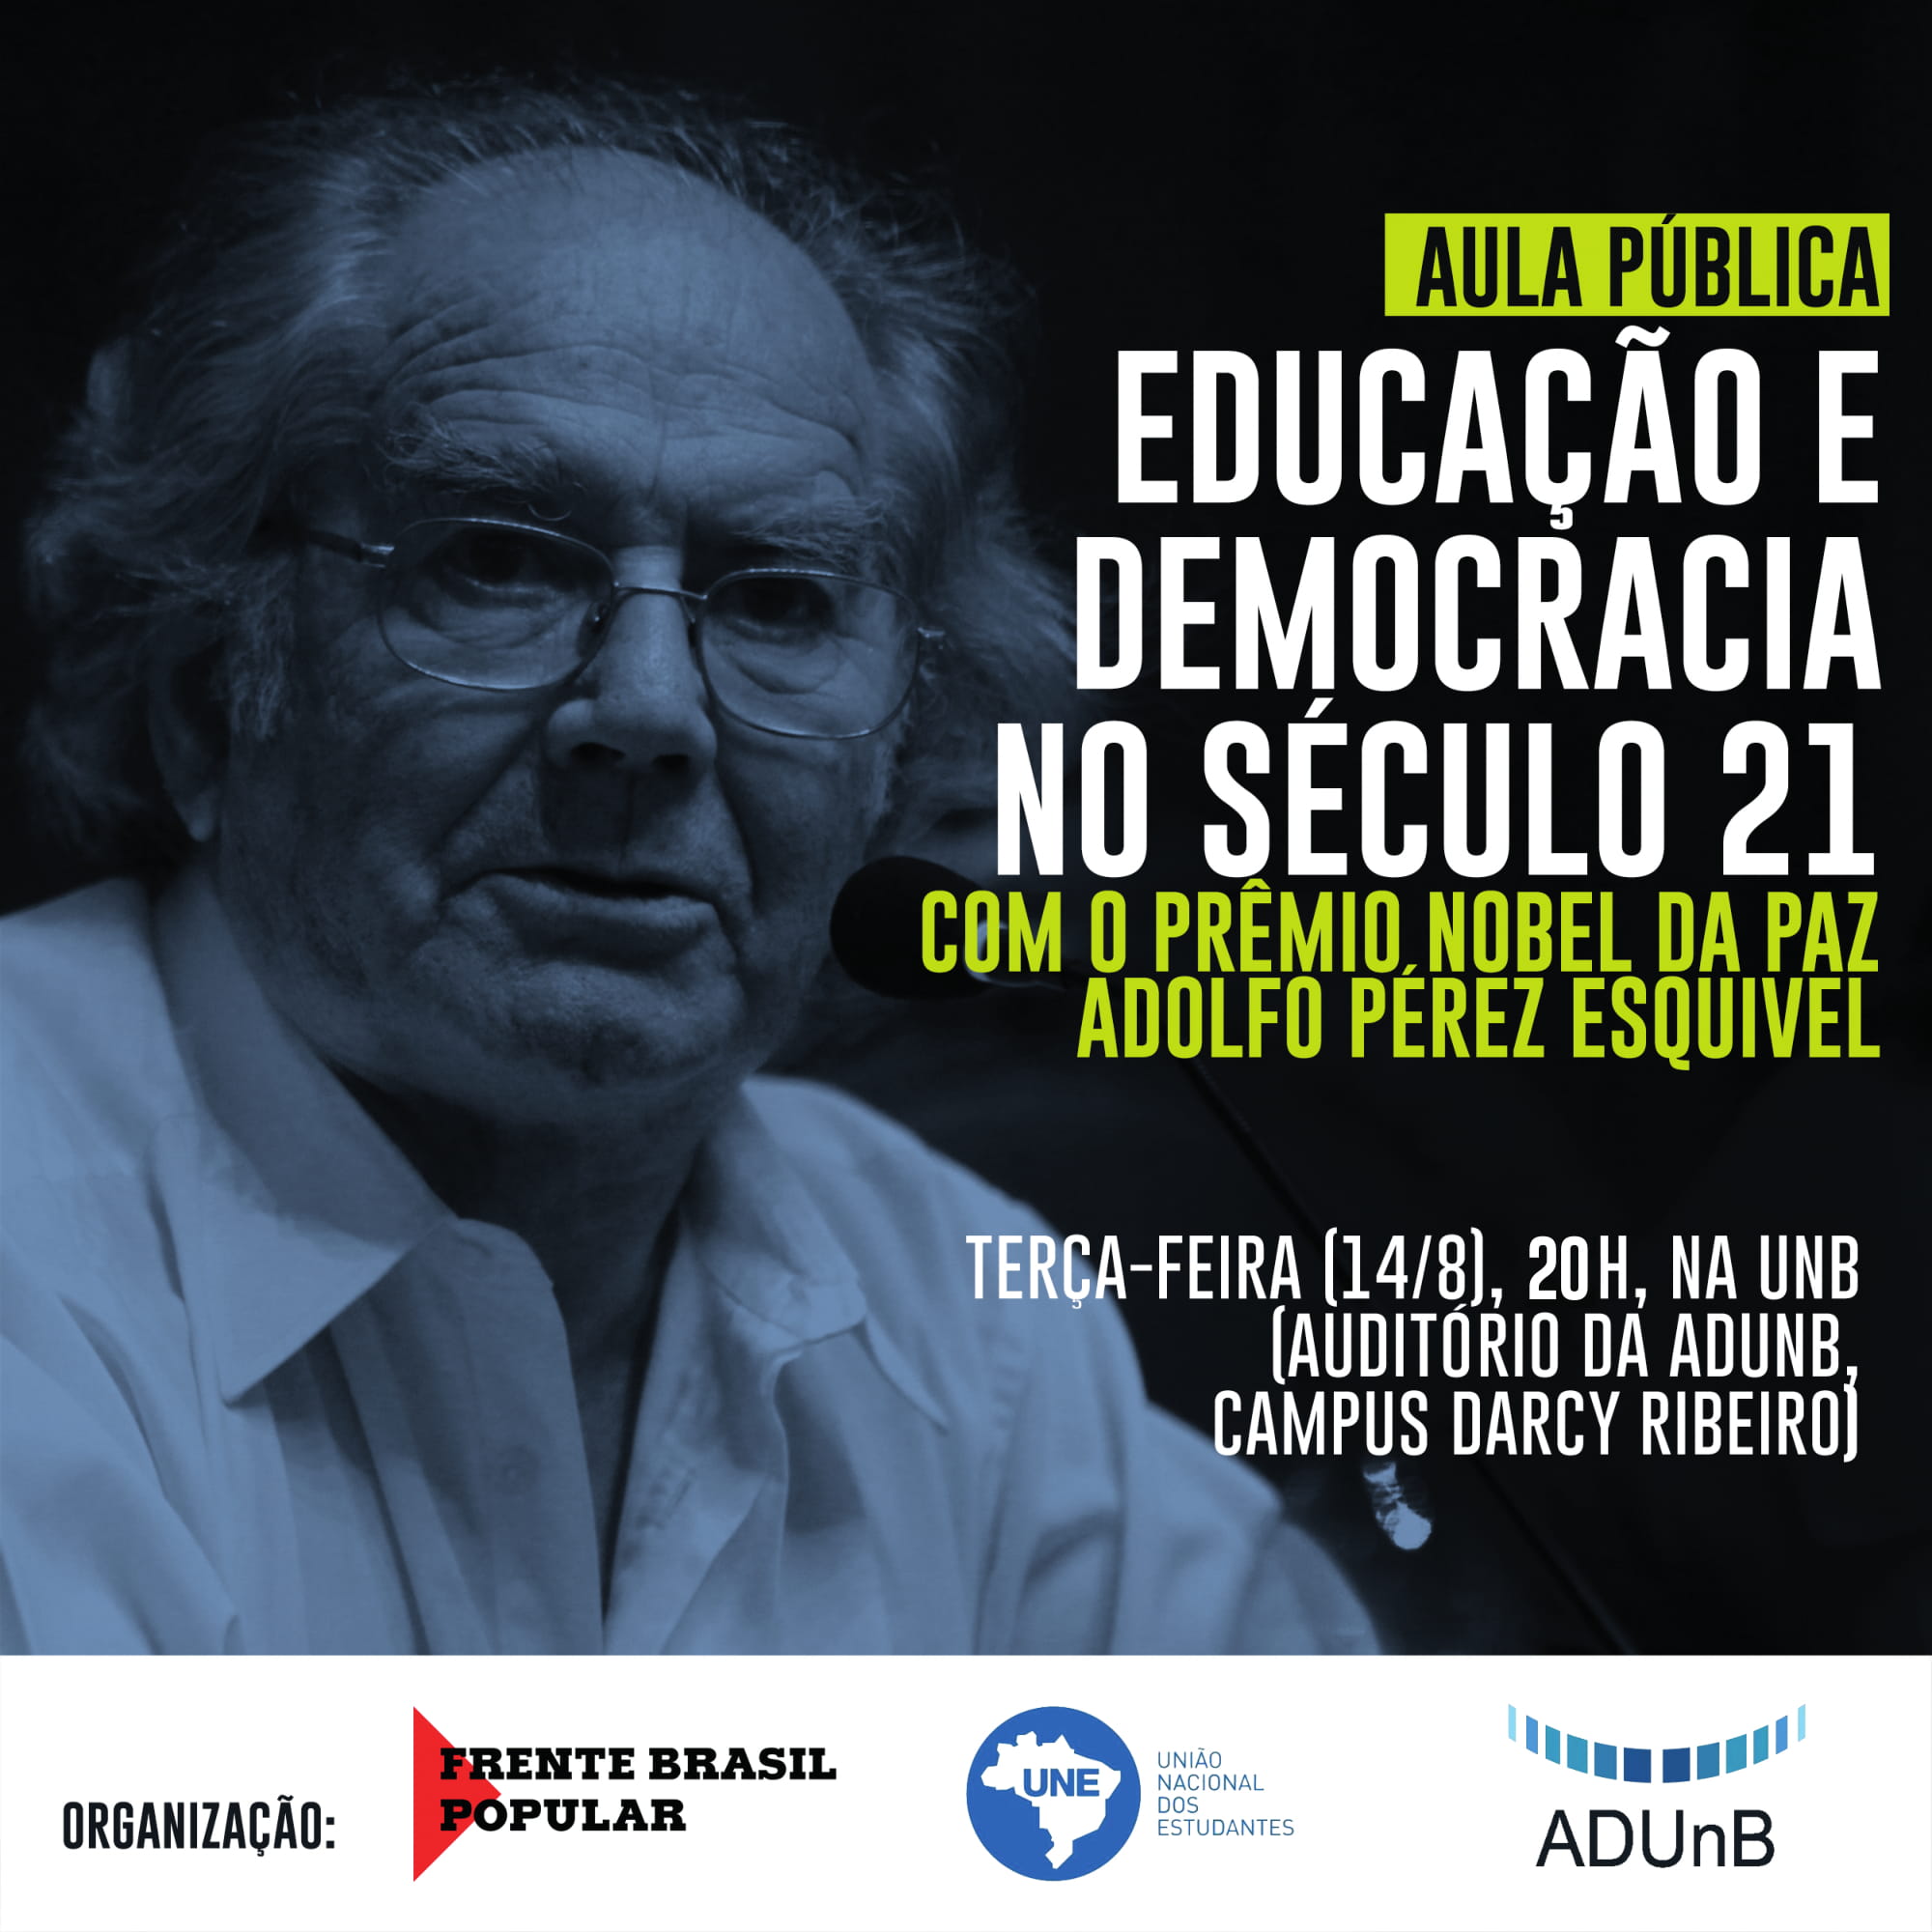 Aula pública “Educação e Democracia no século 21”